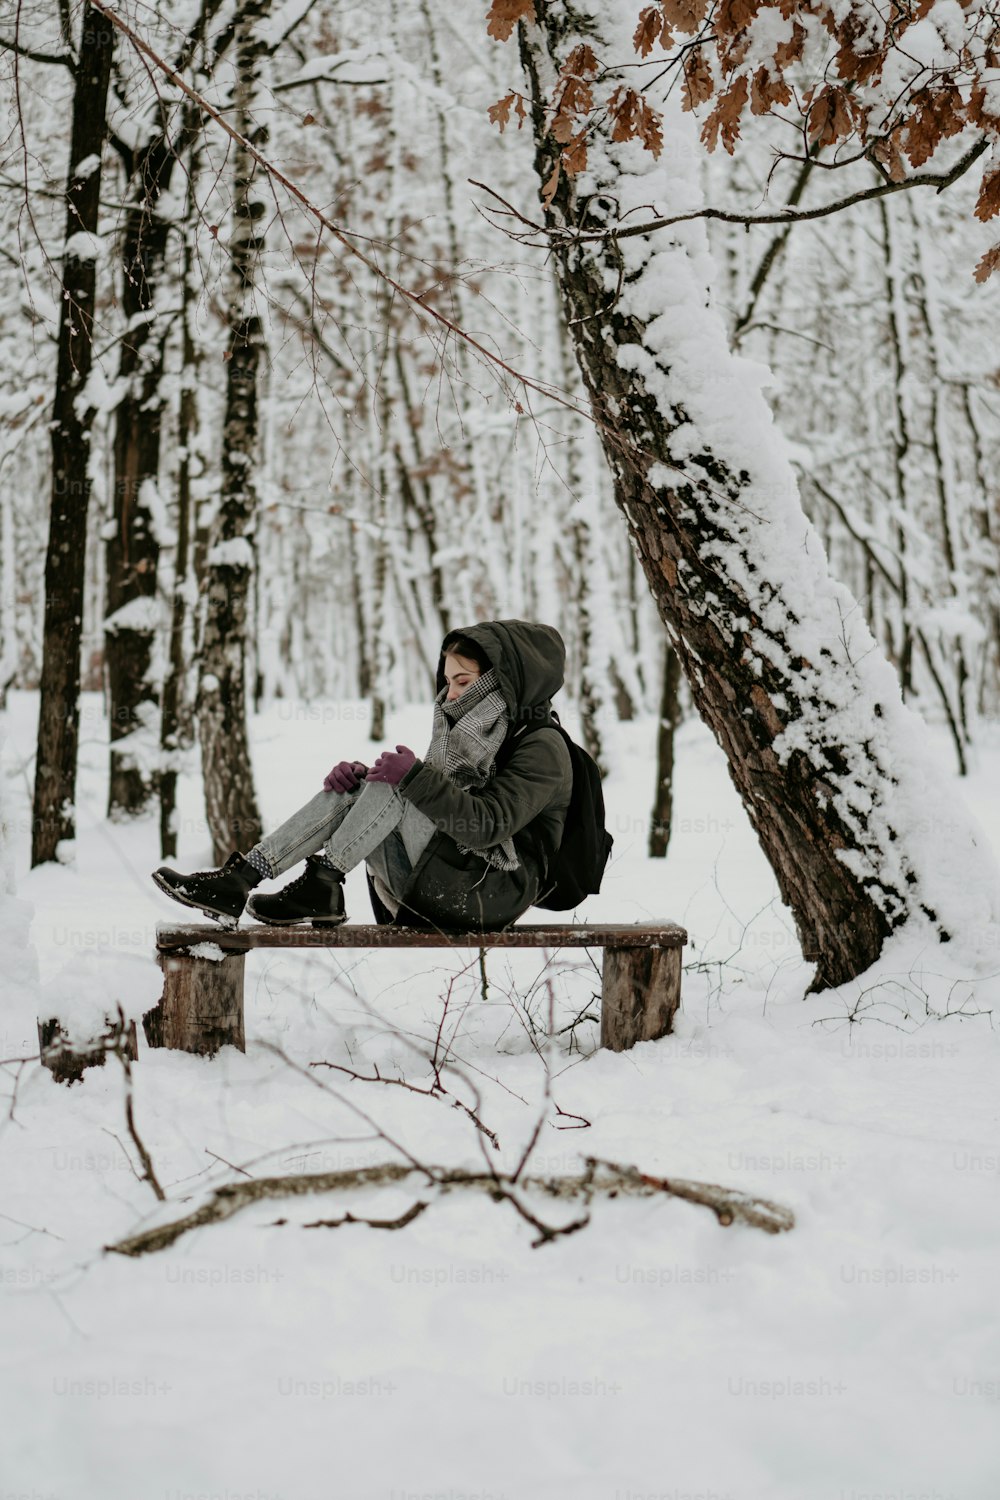 Una persona sentada en un banco en la nieve